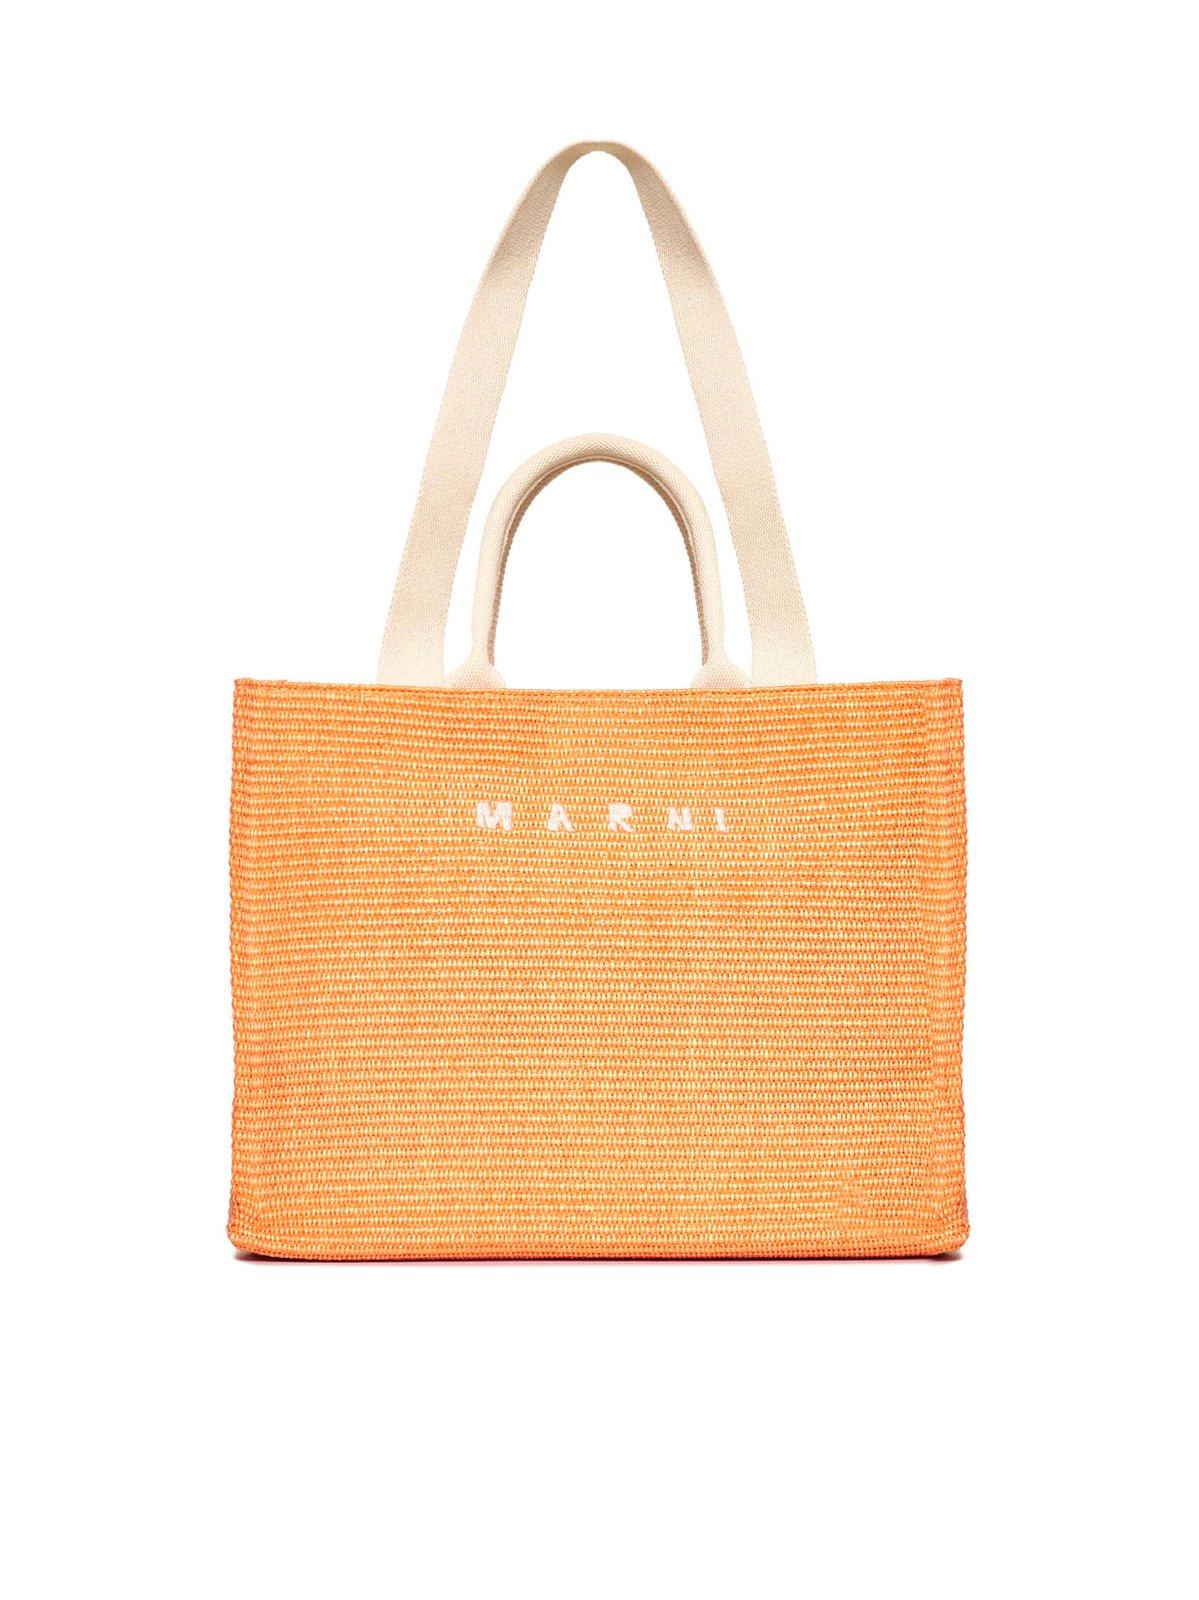 Marni Logo Embroidered Top Handle Bag